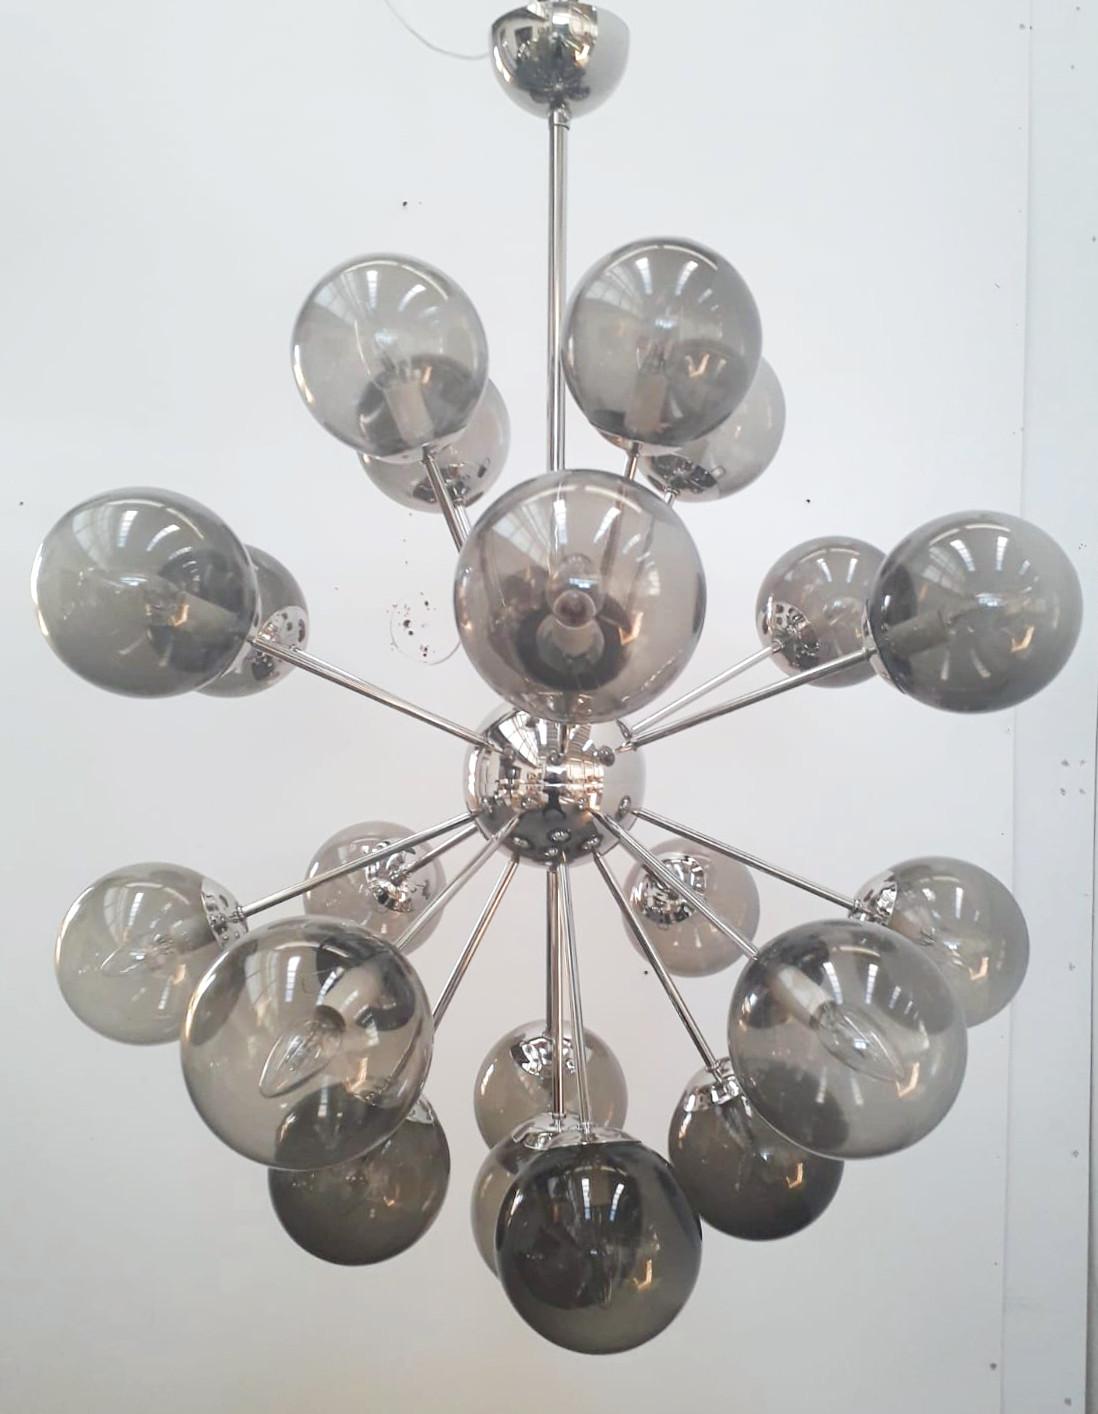 Italienischer Sputnik-Kronleuchter mit 21 Murano-Glaskugeln auf Metallrahmen in poliertem Nickel / Entwurf: Fabio Bergomi für FABIO LTD / Hergestellt in Italien
21 Leuchten / Typ E12 oder E14 / max. 40W pro Stück
Durchmesser: 36 Zoll / Höhe: 43 Zoll